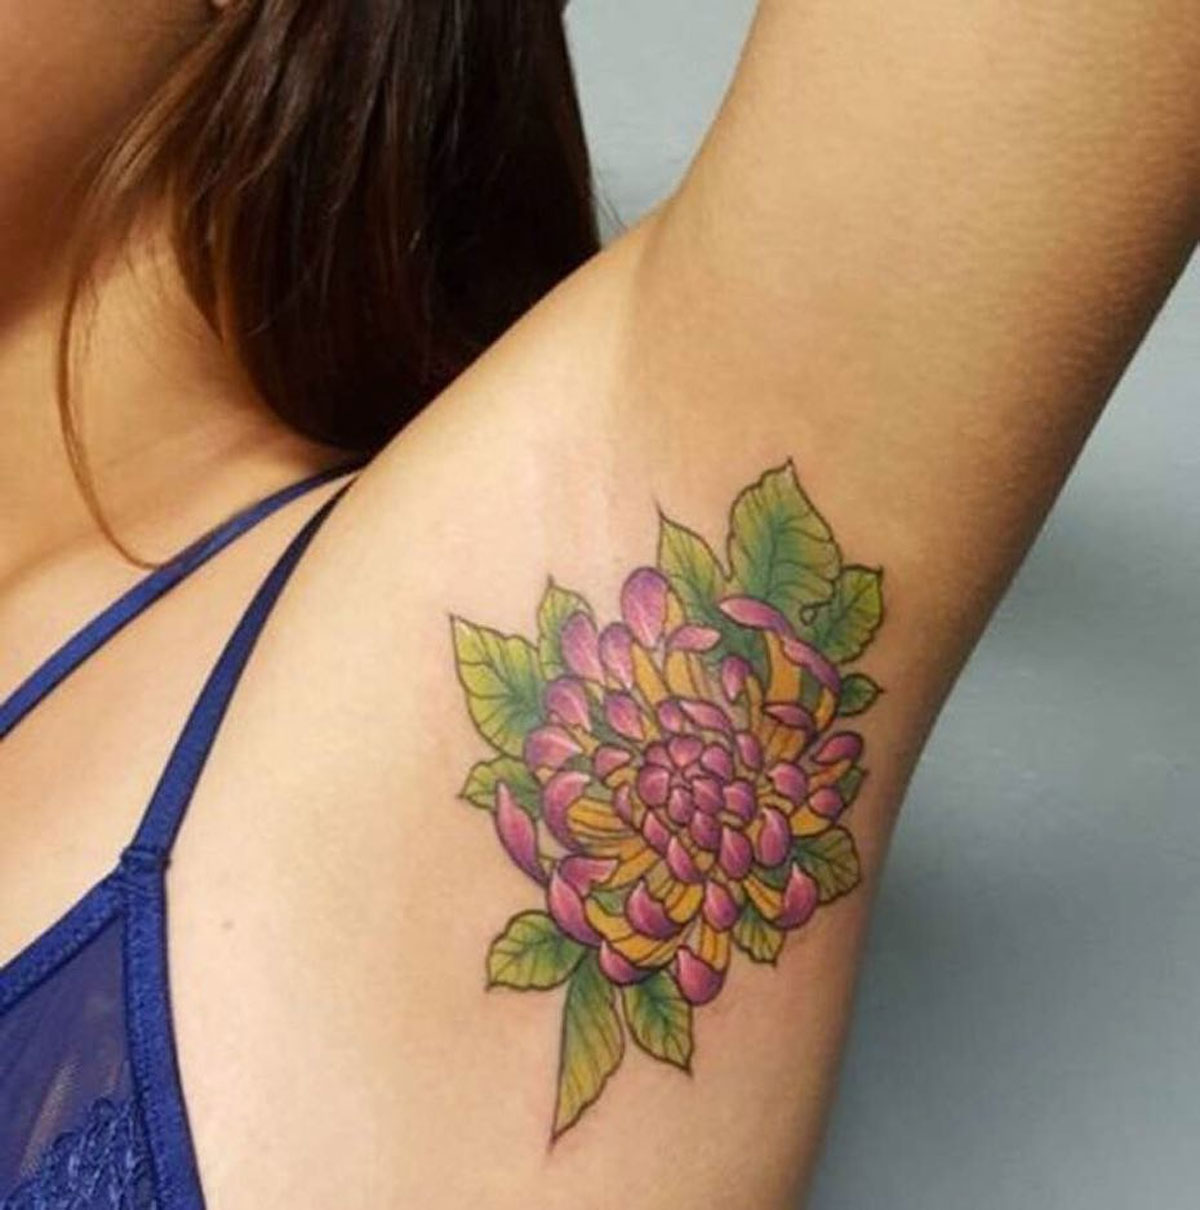 Tatuagens nas axilas vira tendência e ganha novos adeptos